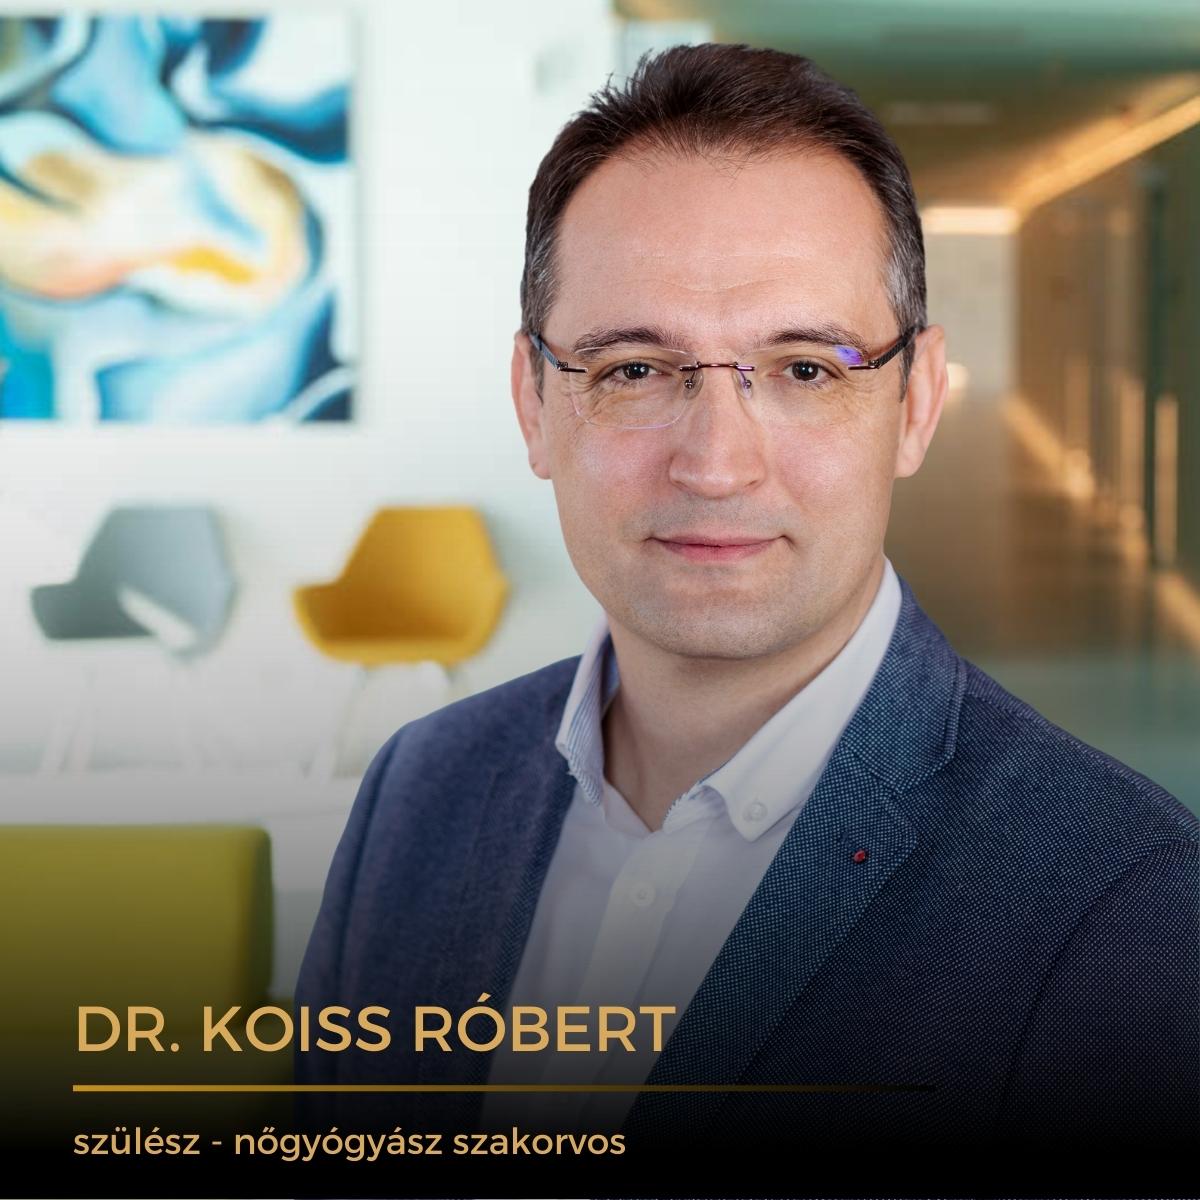 Dr. Koiss Róbert nőgyógyász, HPV specialista, Wáberer Medical Center Nőgyógyászati részleg vezető főorvosa